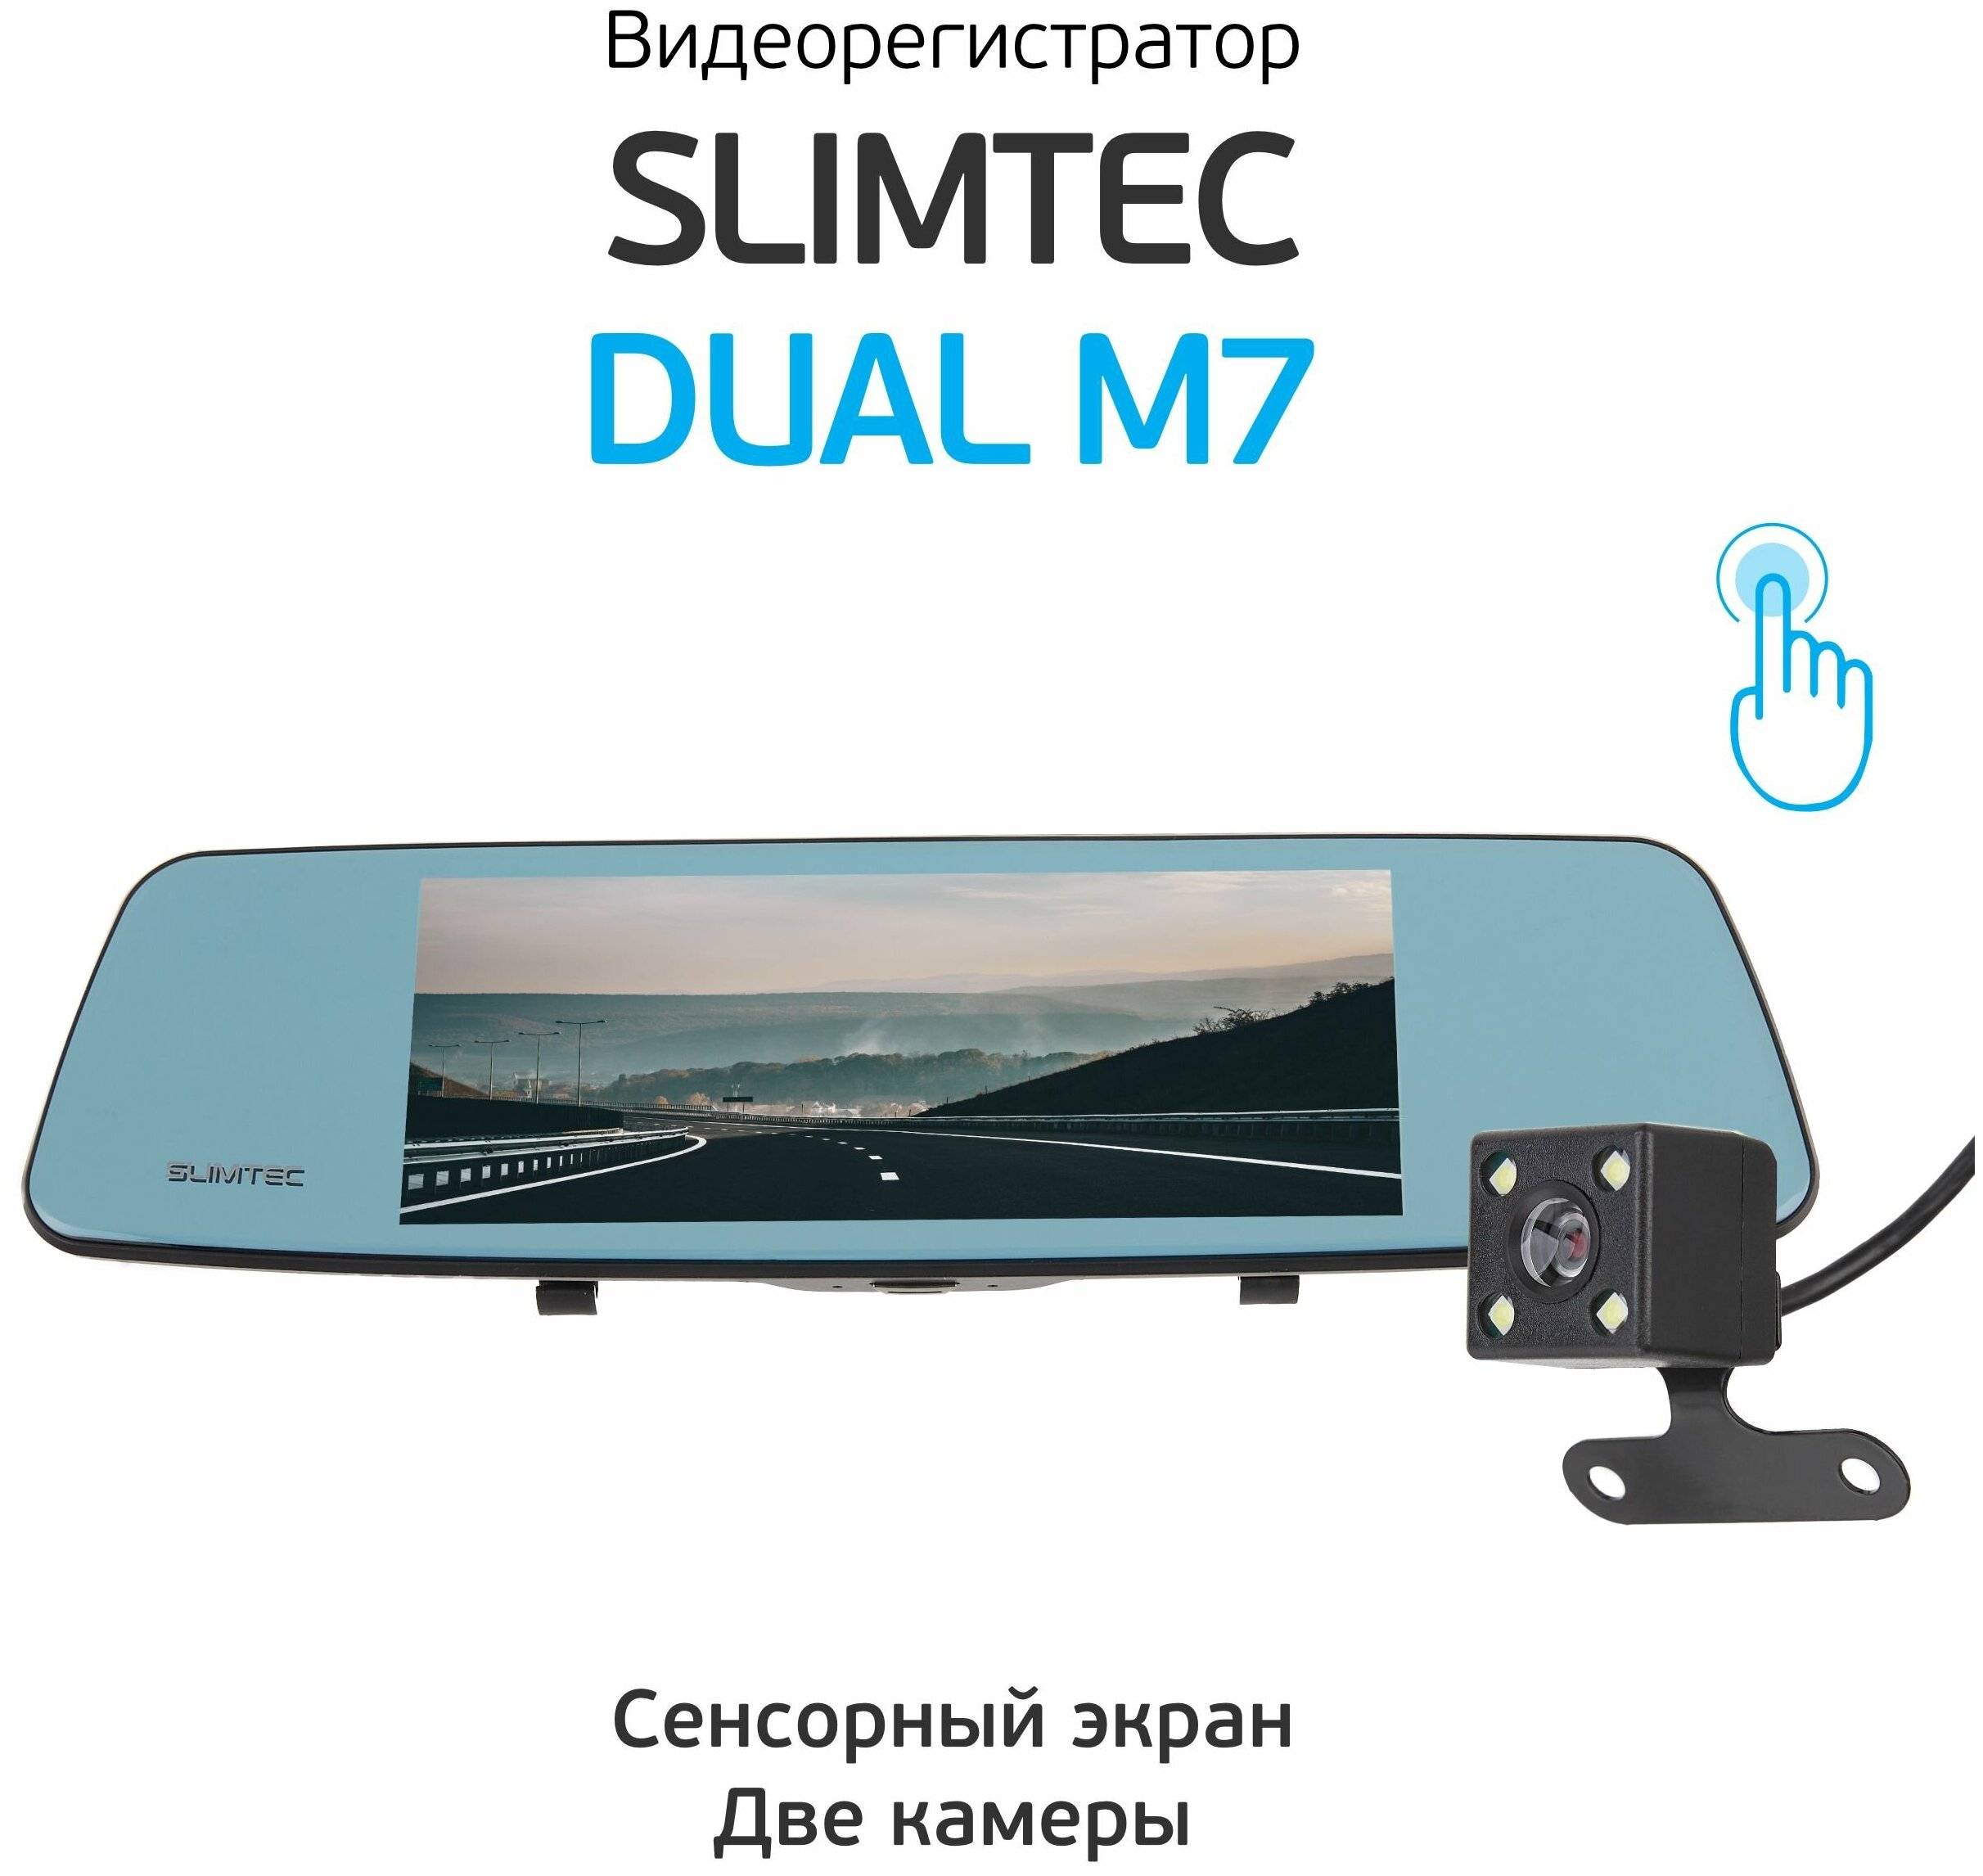 Отзывы на slimtec dual m7 от владельцев зеркала-видеорегистратора